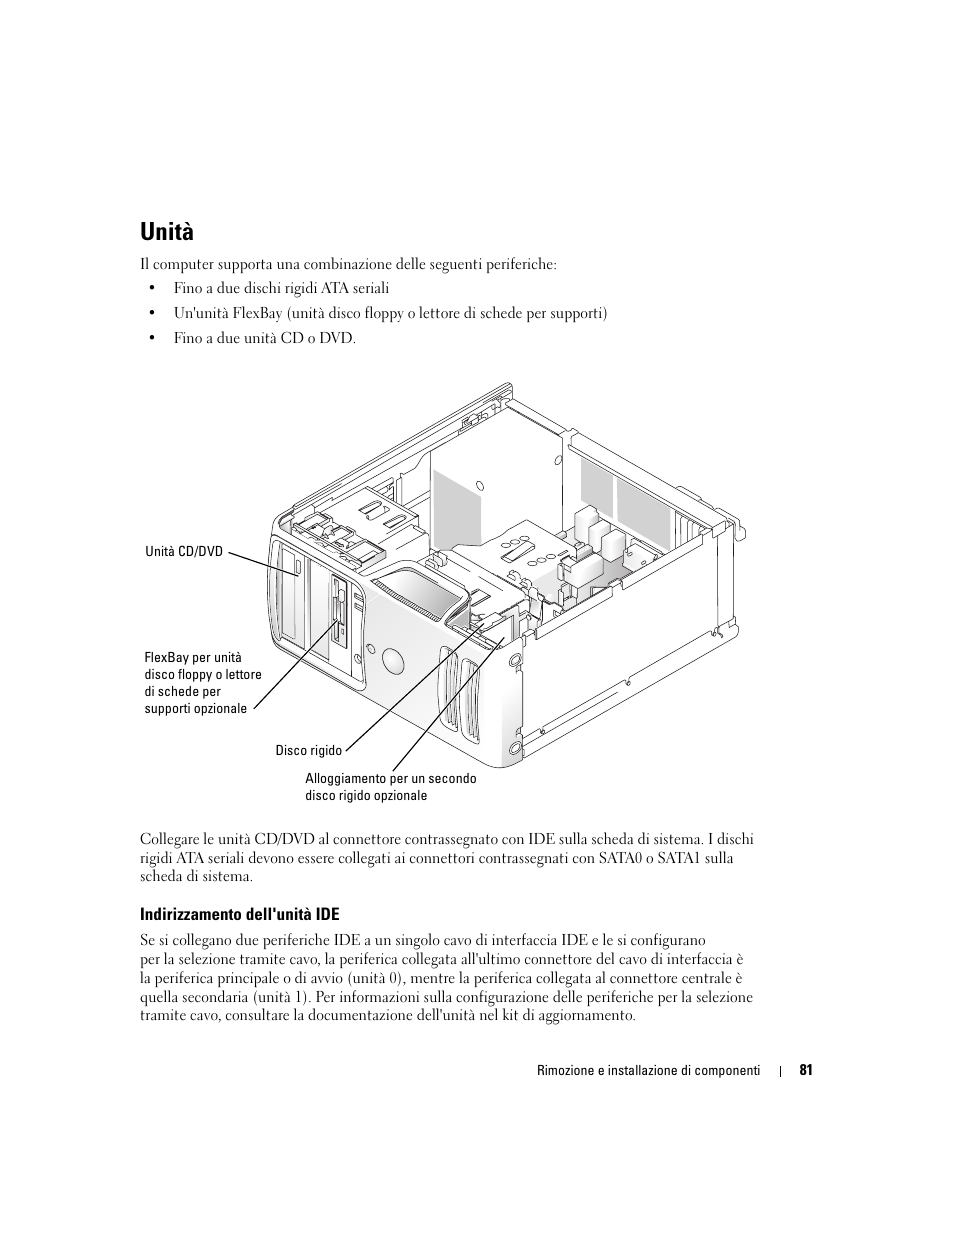 Unità, Indirizzamento dell'unità ide | Dell Dimension 3100/E310 Manuale d'uso | Pagina 81 / 142